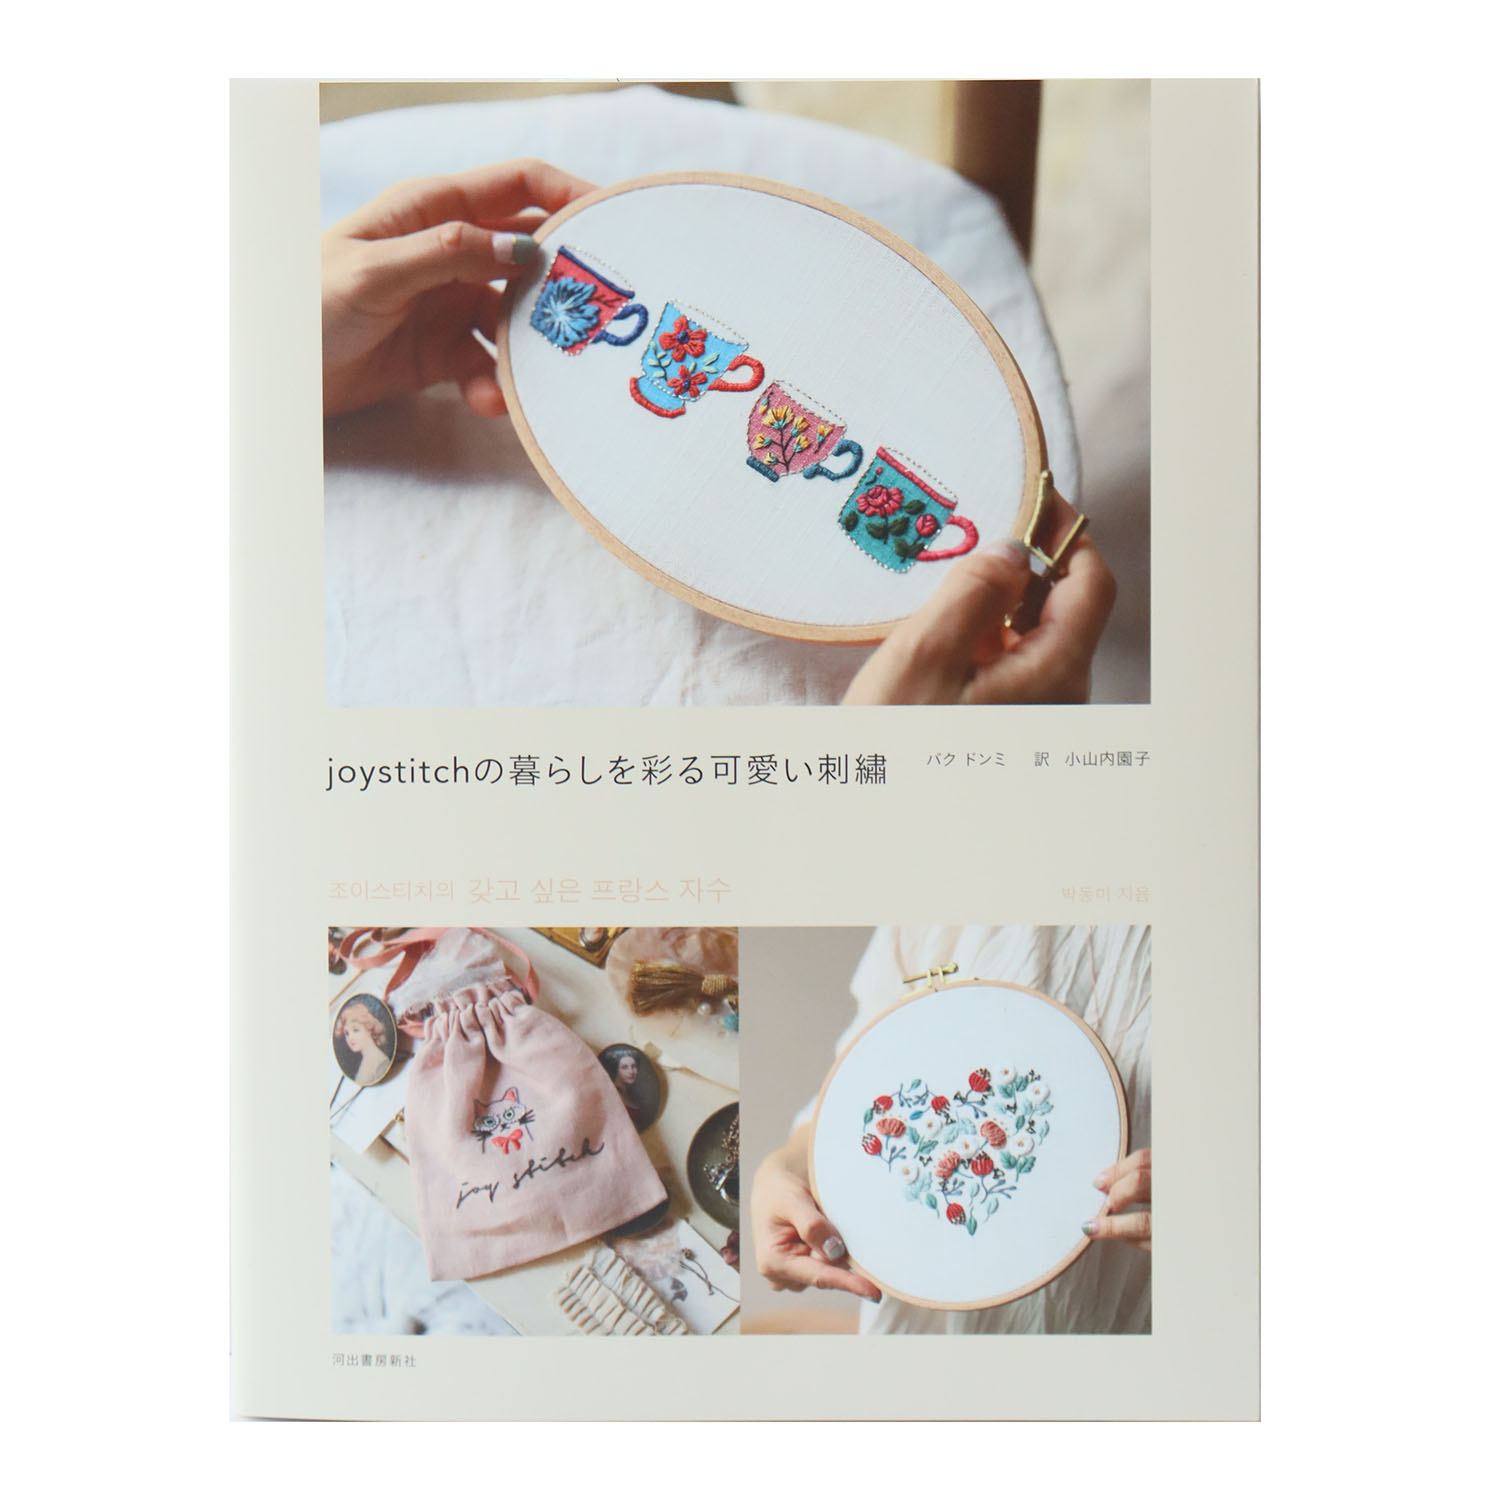 【お取り寄せ・返品不可】joystitchの暮らしを彩る可愛い刺繍 パクドンミ著 /河出書房新社 (冊)